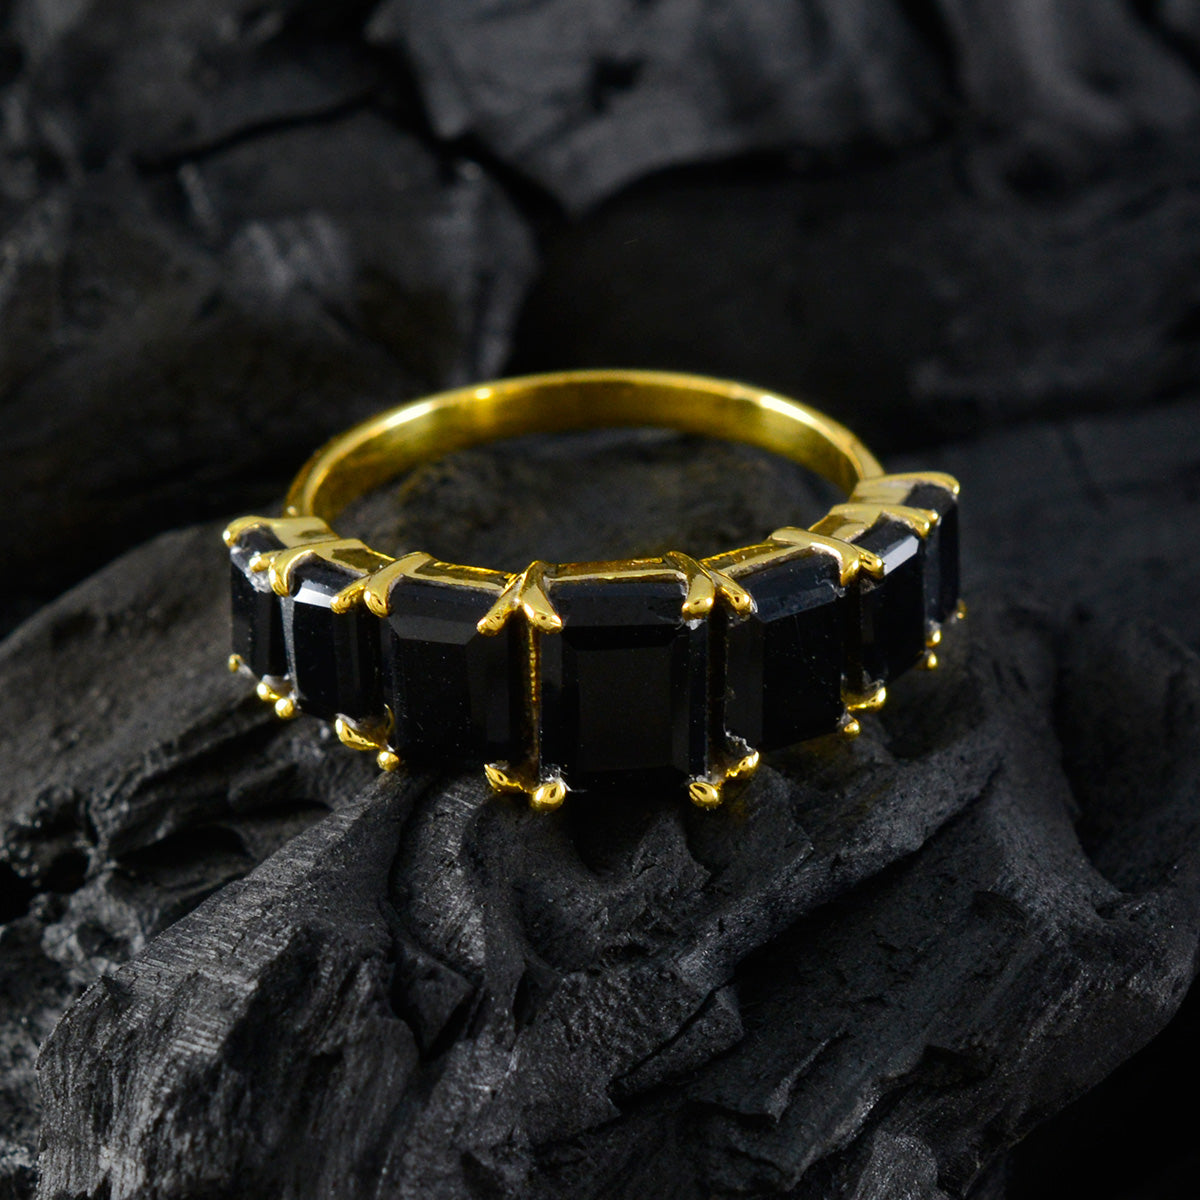 riyo exportör silverring med gul guldplätering svart onyxsten åttakant form stift mode smycken svart fredag ring